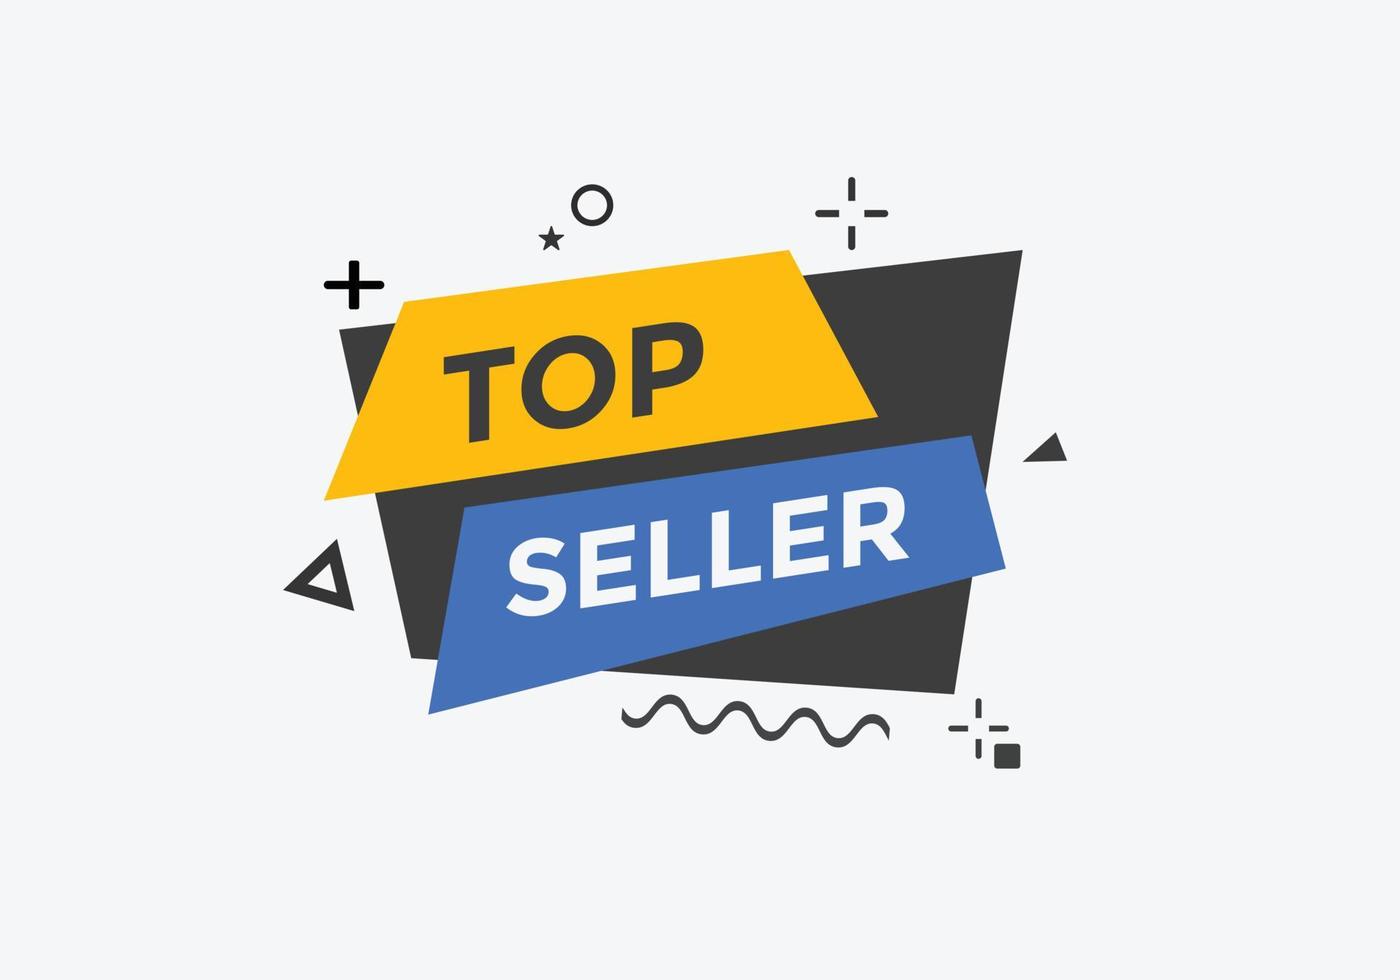 botón de texto del vendedor superior. burbuja de diálogo. banner web colorido de mejor vendedor. ilustración vectorial vector